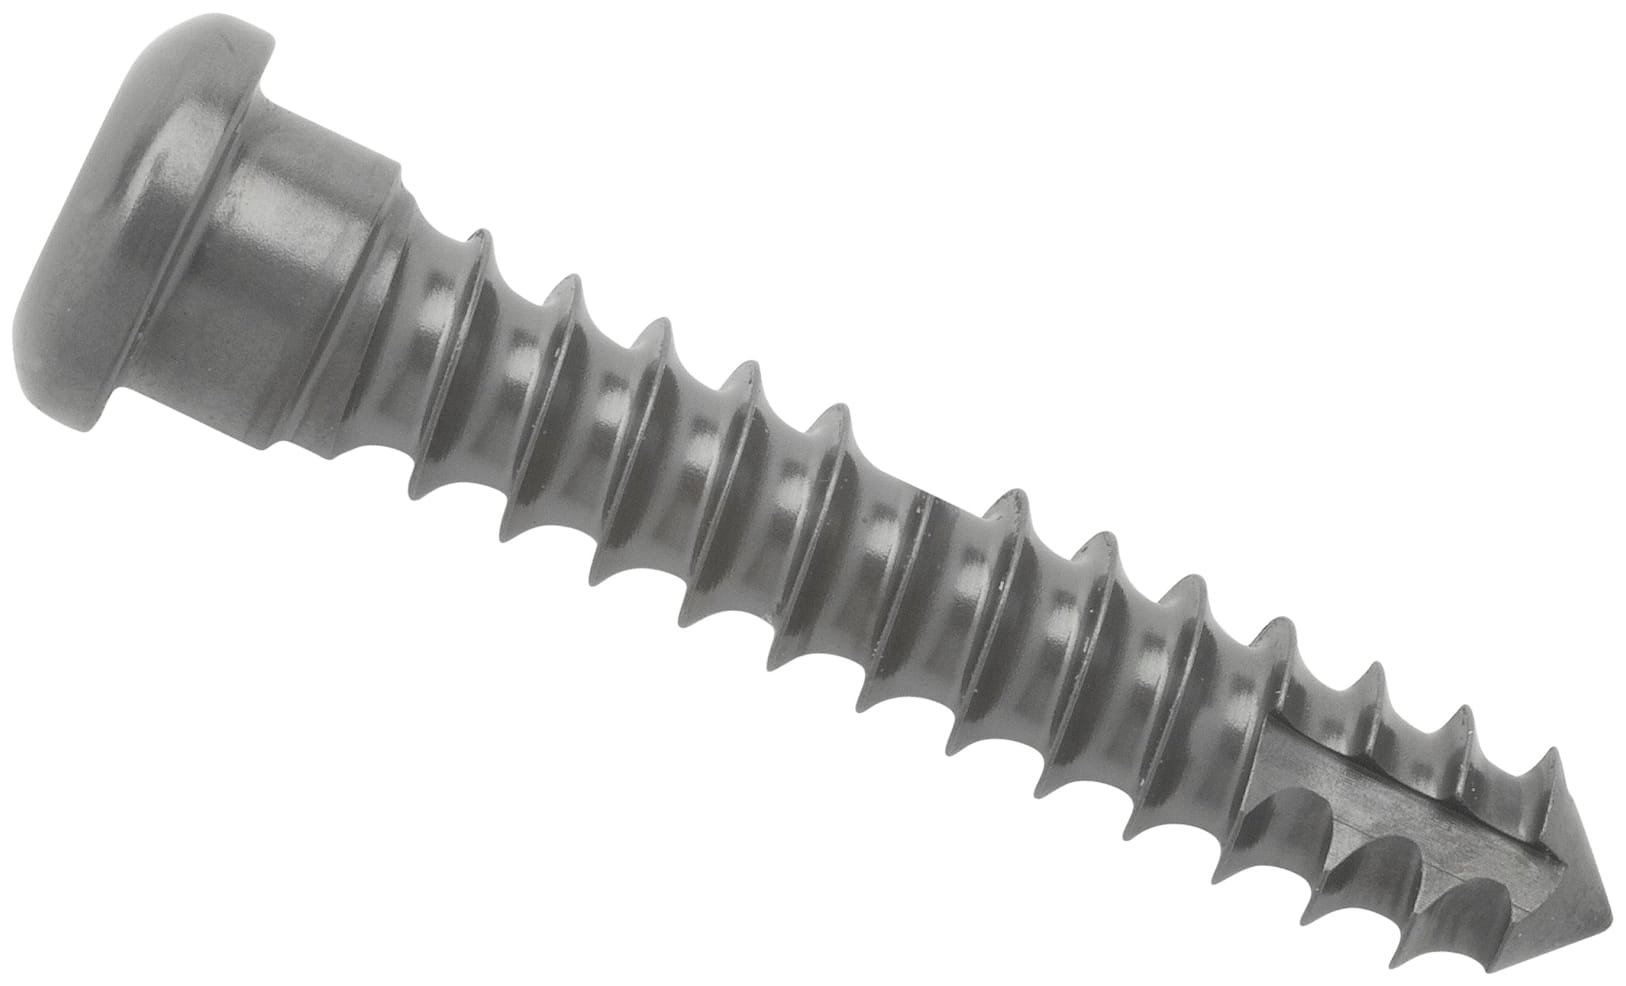 Cortical Screw, 3.5 mm x 18 mm